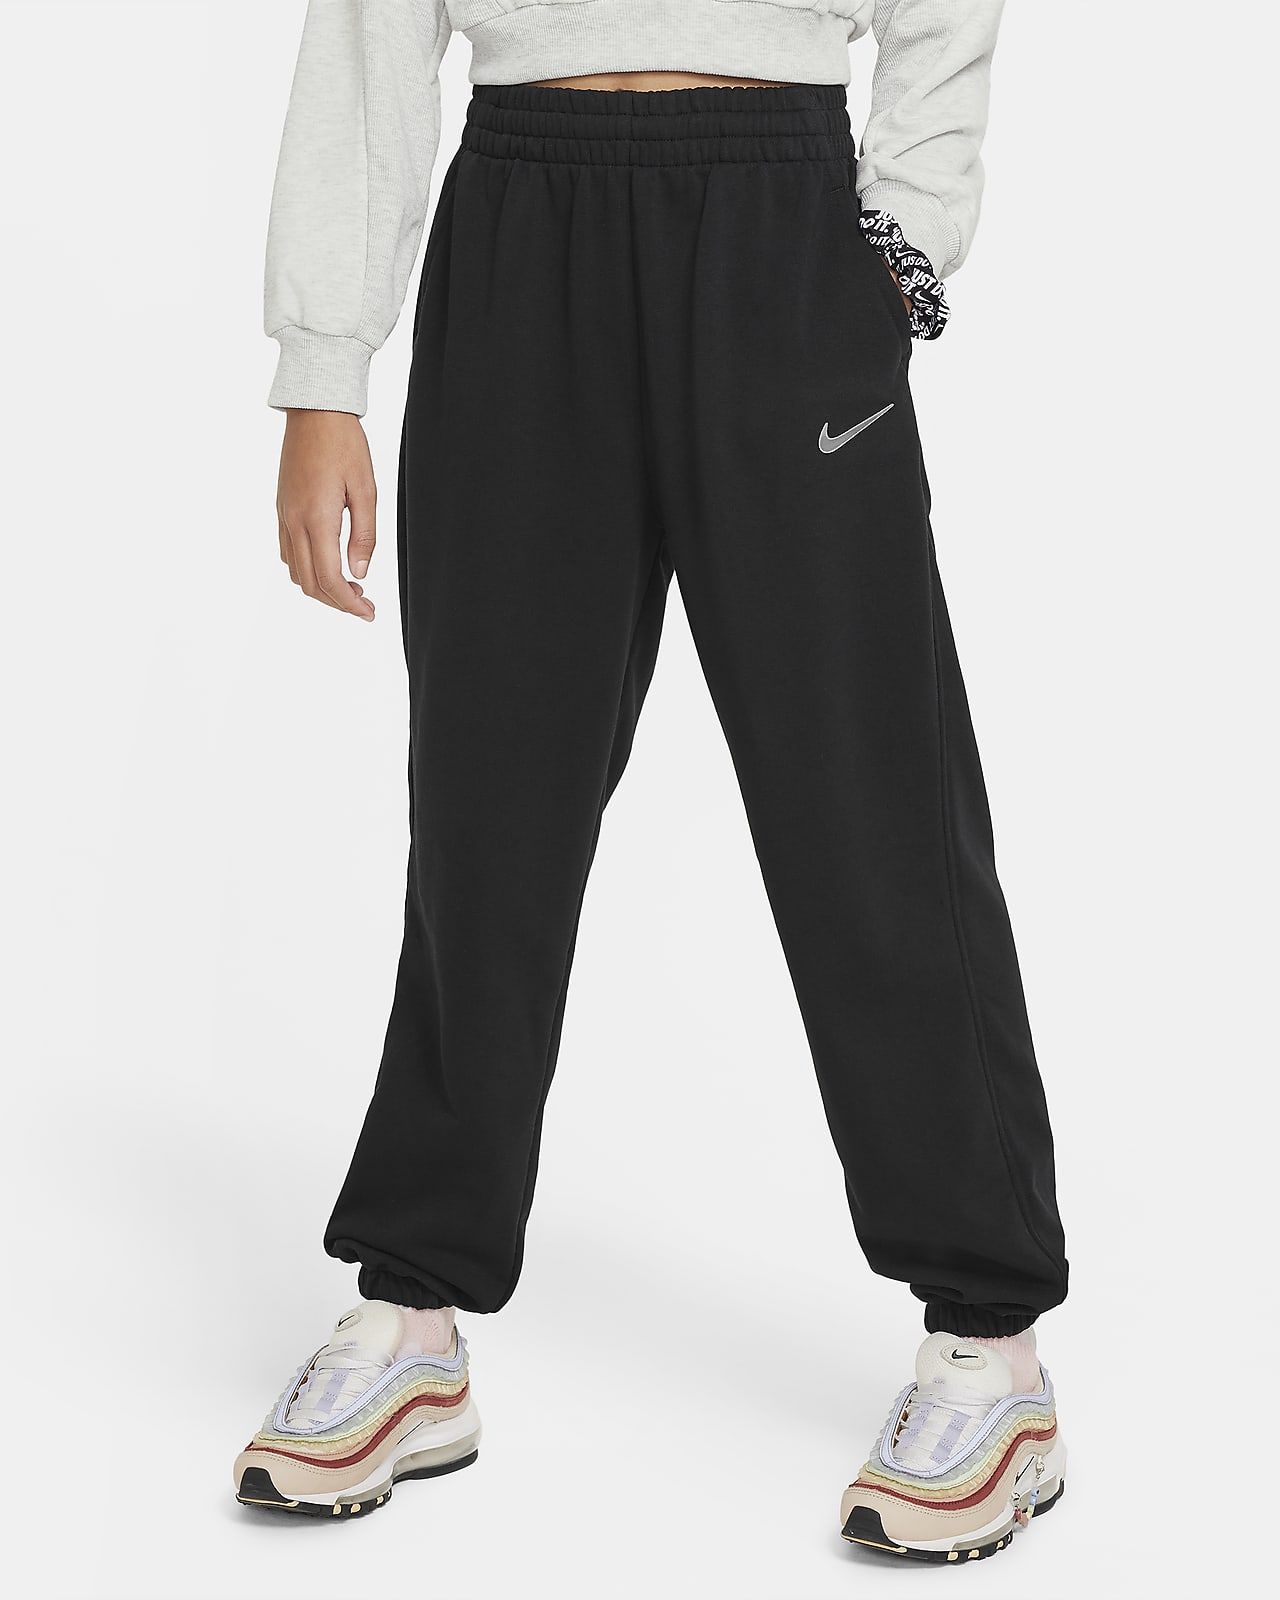 Φλις παντελόνι φόρμας Dri-FIT σε ριχτή γραμμή Nike Sportswear για μεγάλα κορίτσια